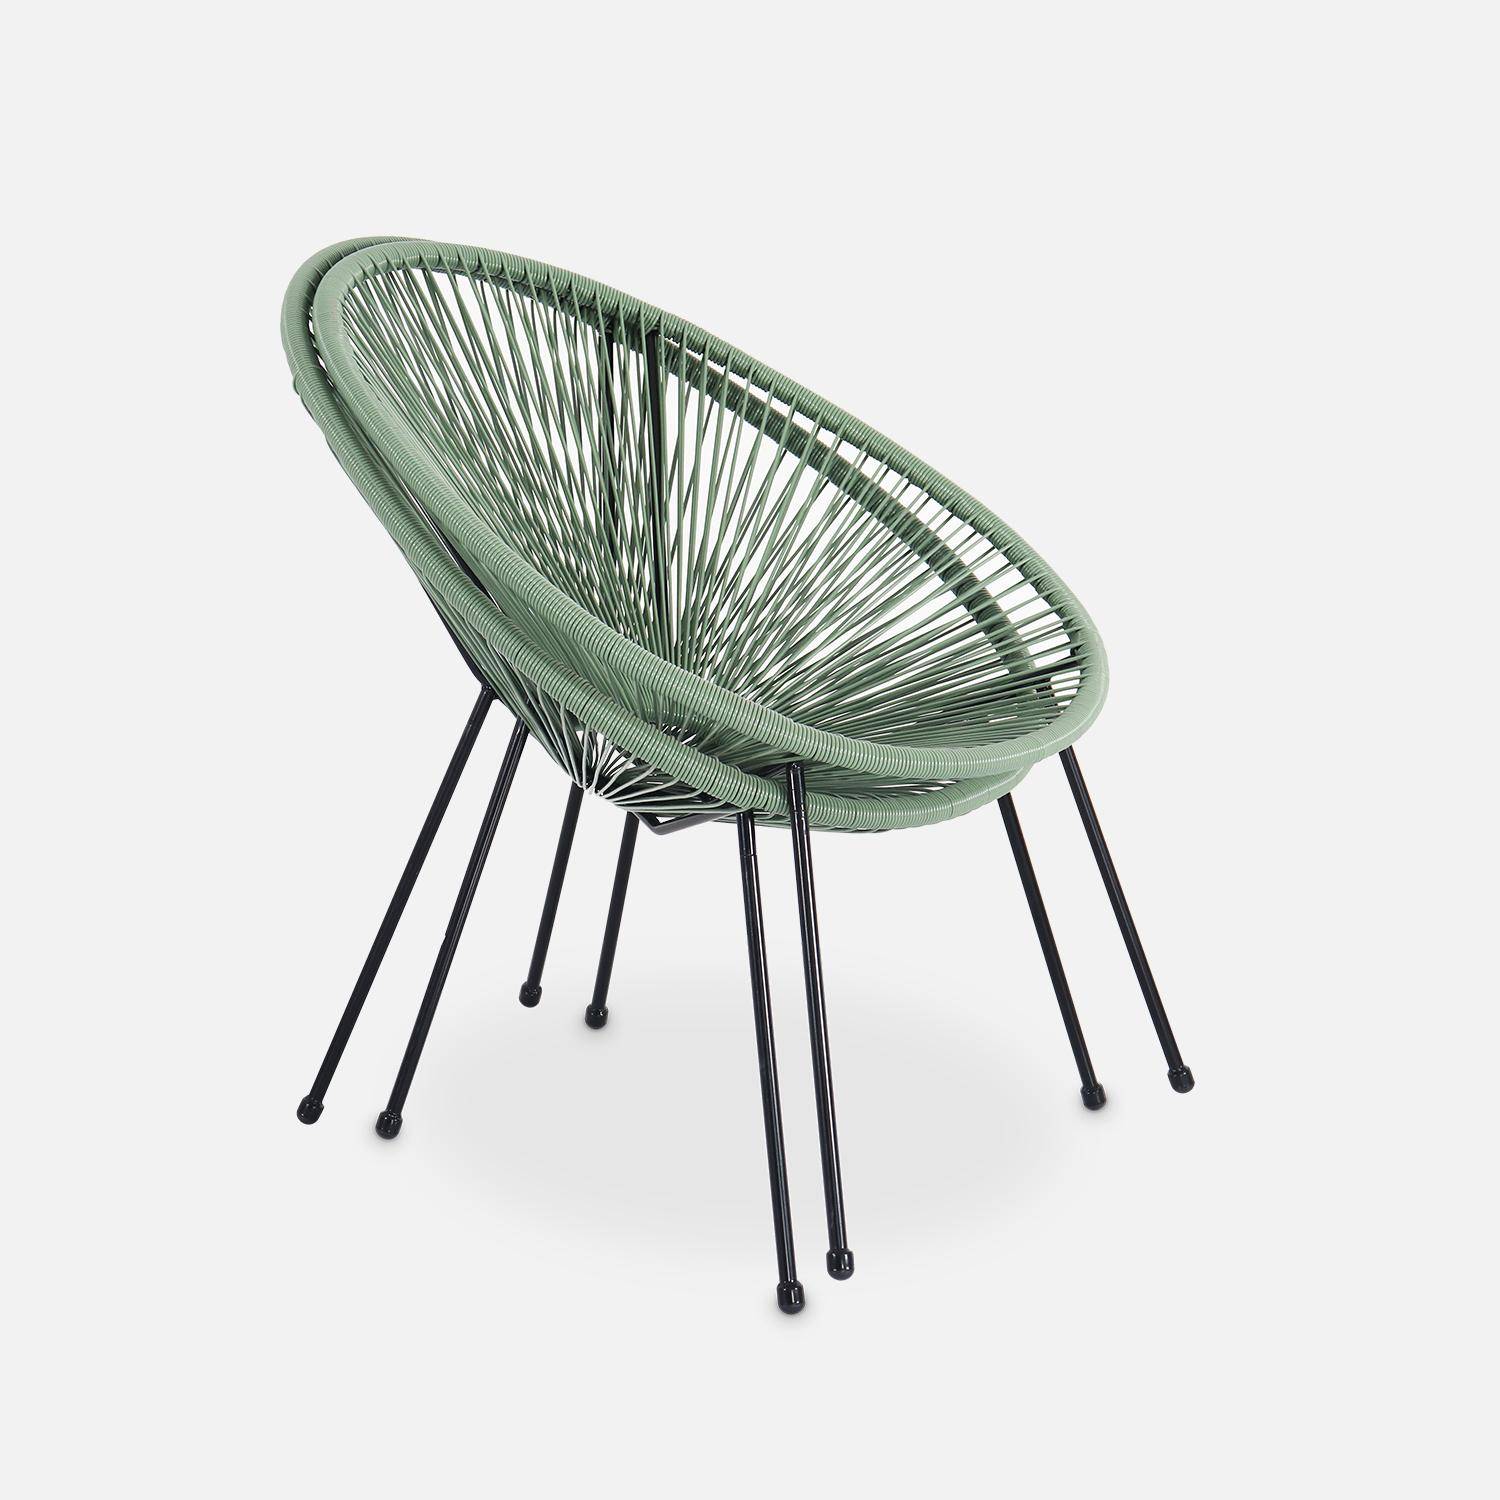 Set mit 2 eierförmigen Sesseln - Acapulco grüngrau - 4-beiniger Sessel im Retro-Design, Kunststoffschnur, innen / außen Photo4